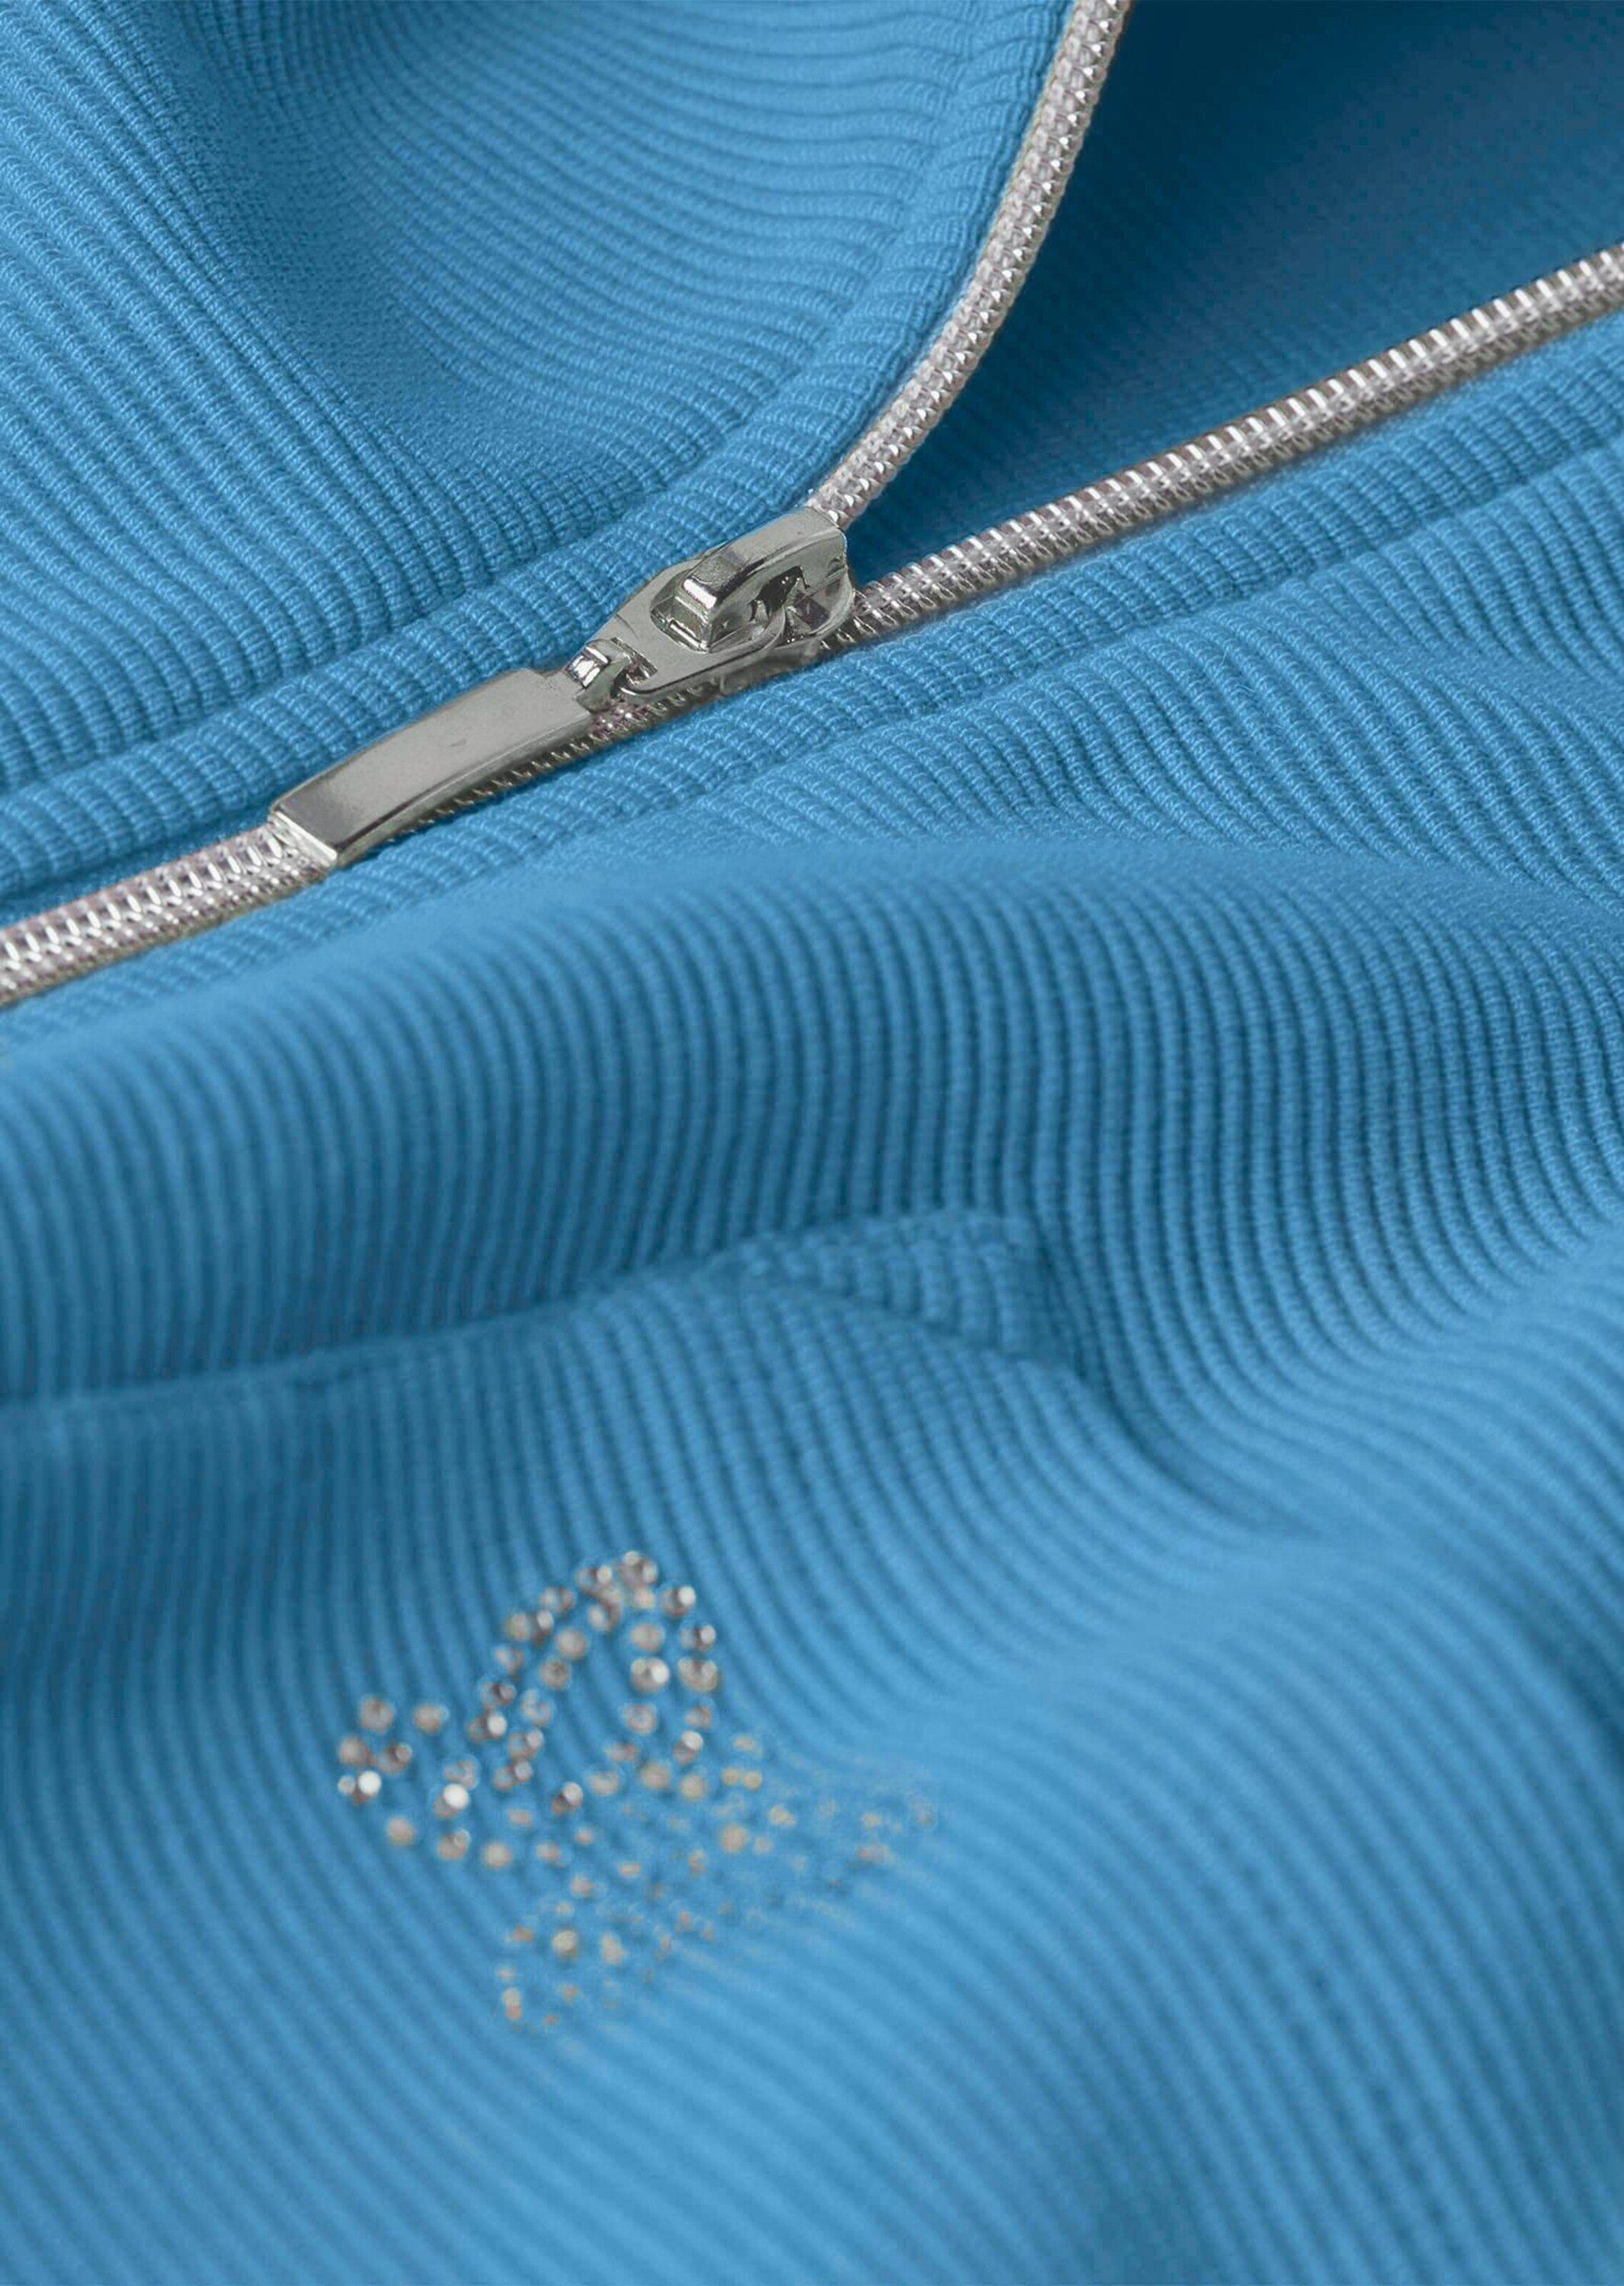 GOLDNER Shirtjacke Bequeme Shirtjacke blau mit Reißverschluss